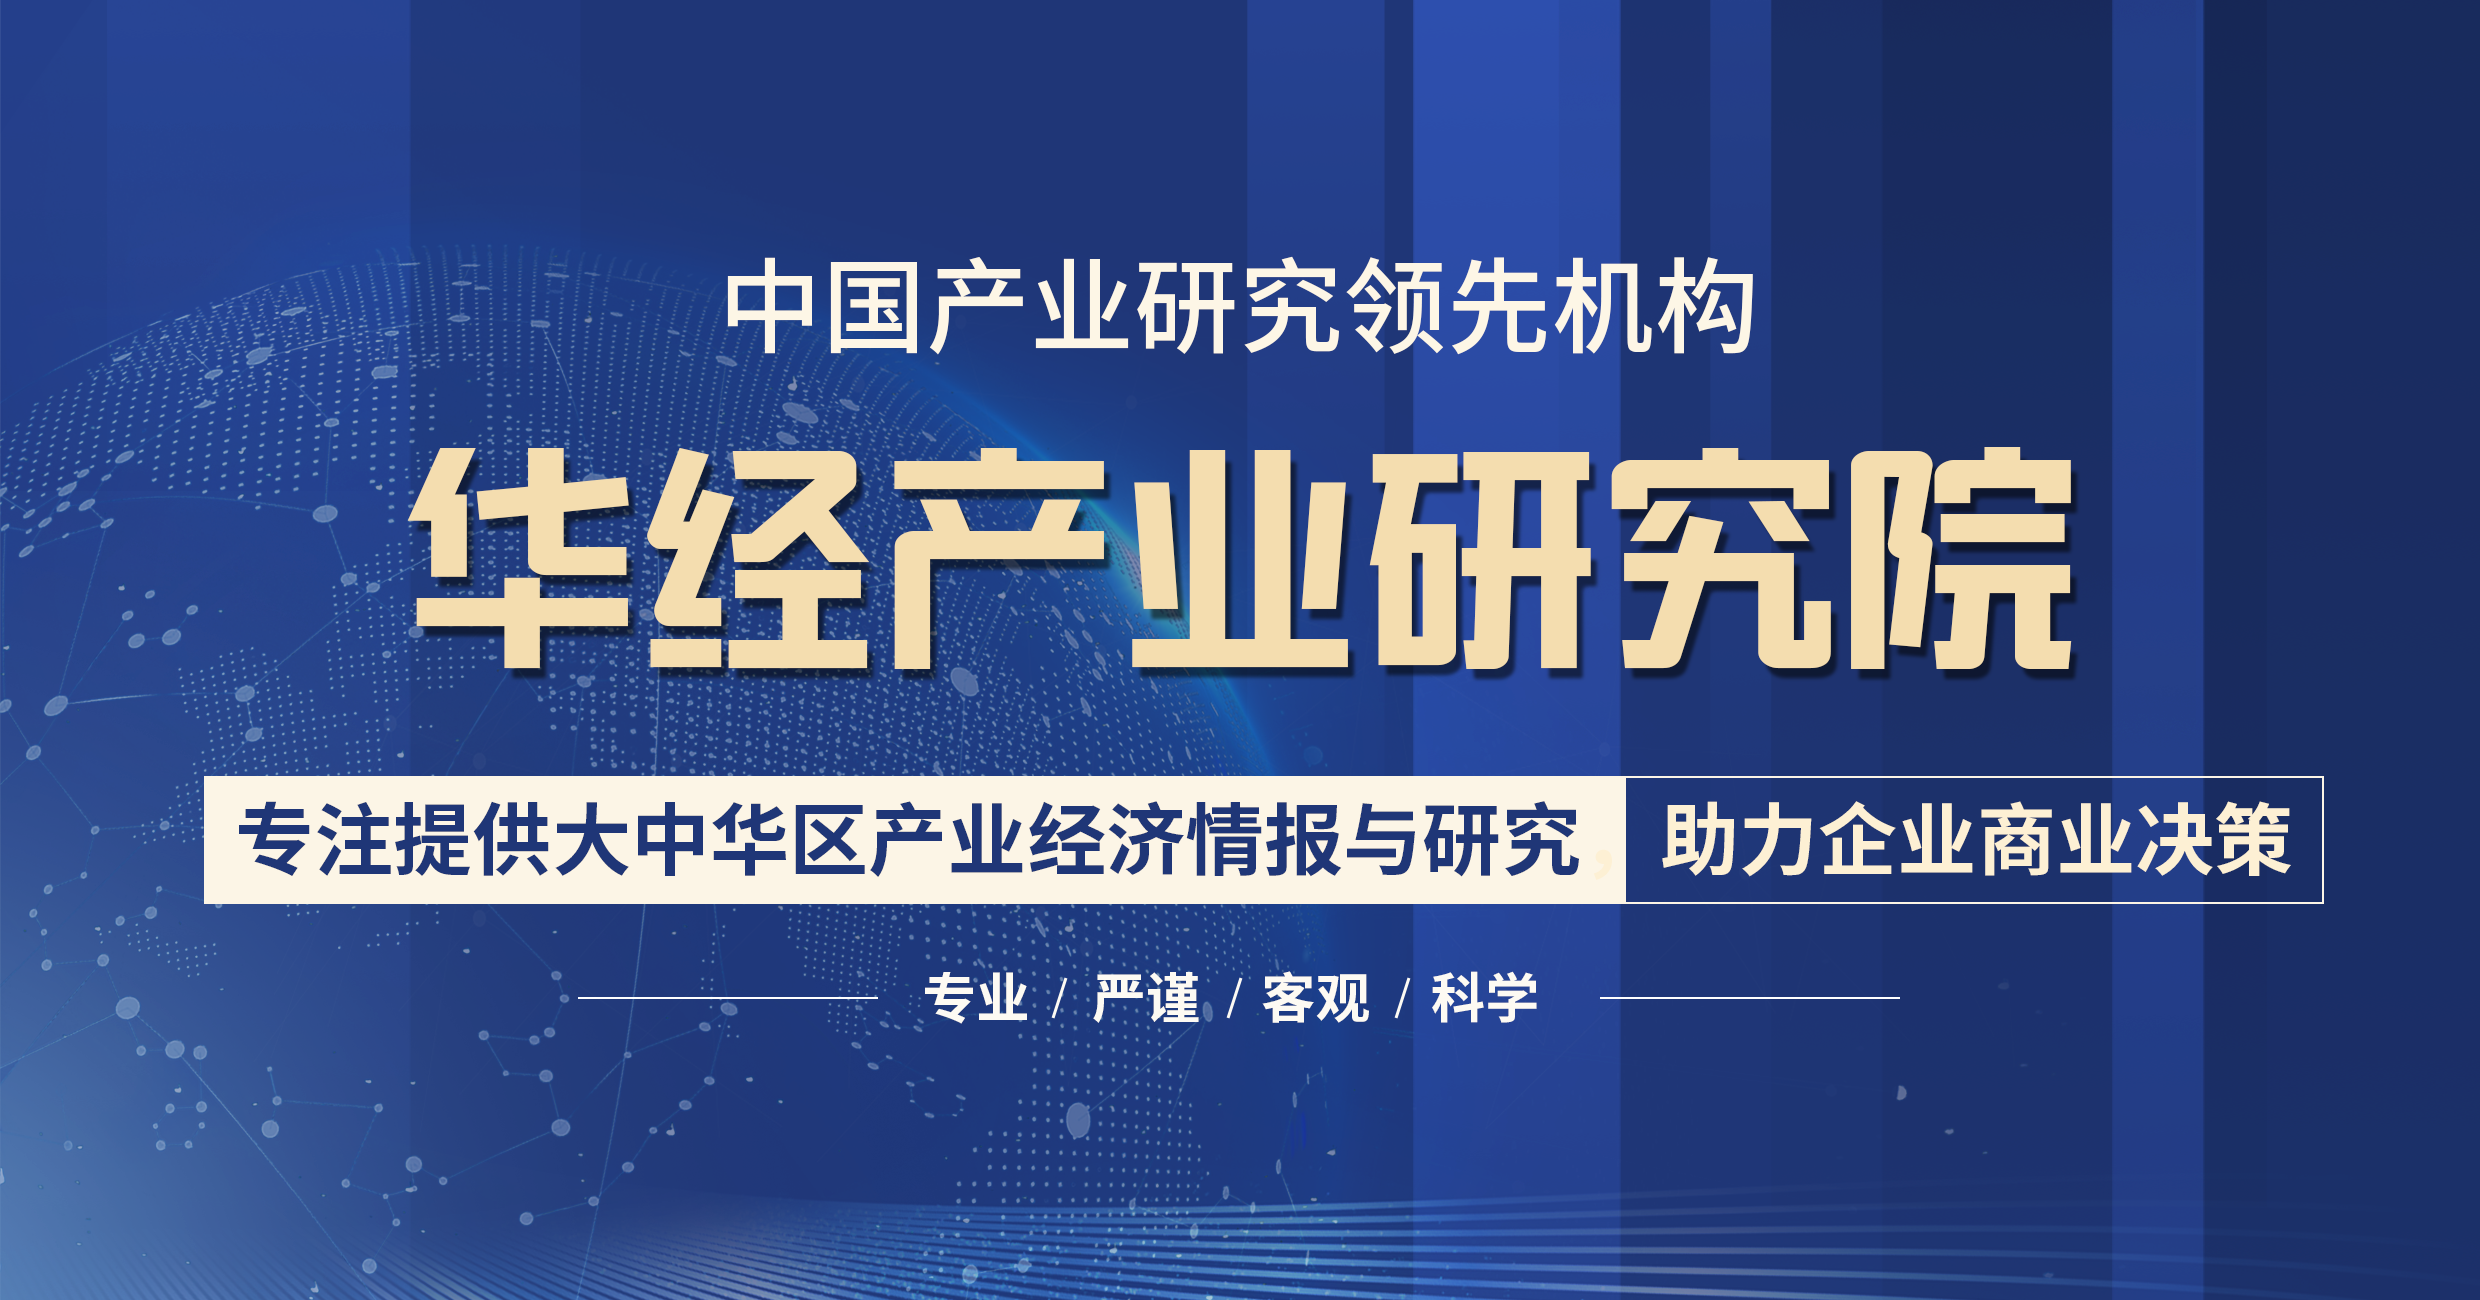 中国SBR粘结剂行业全景产业链分析、重点企业经营情况及发